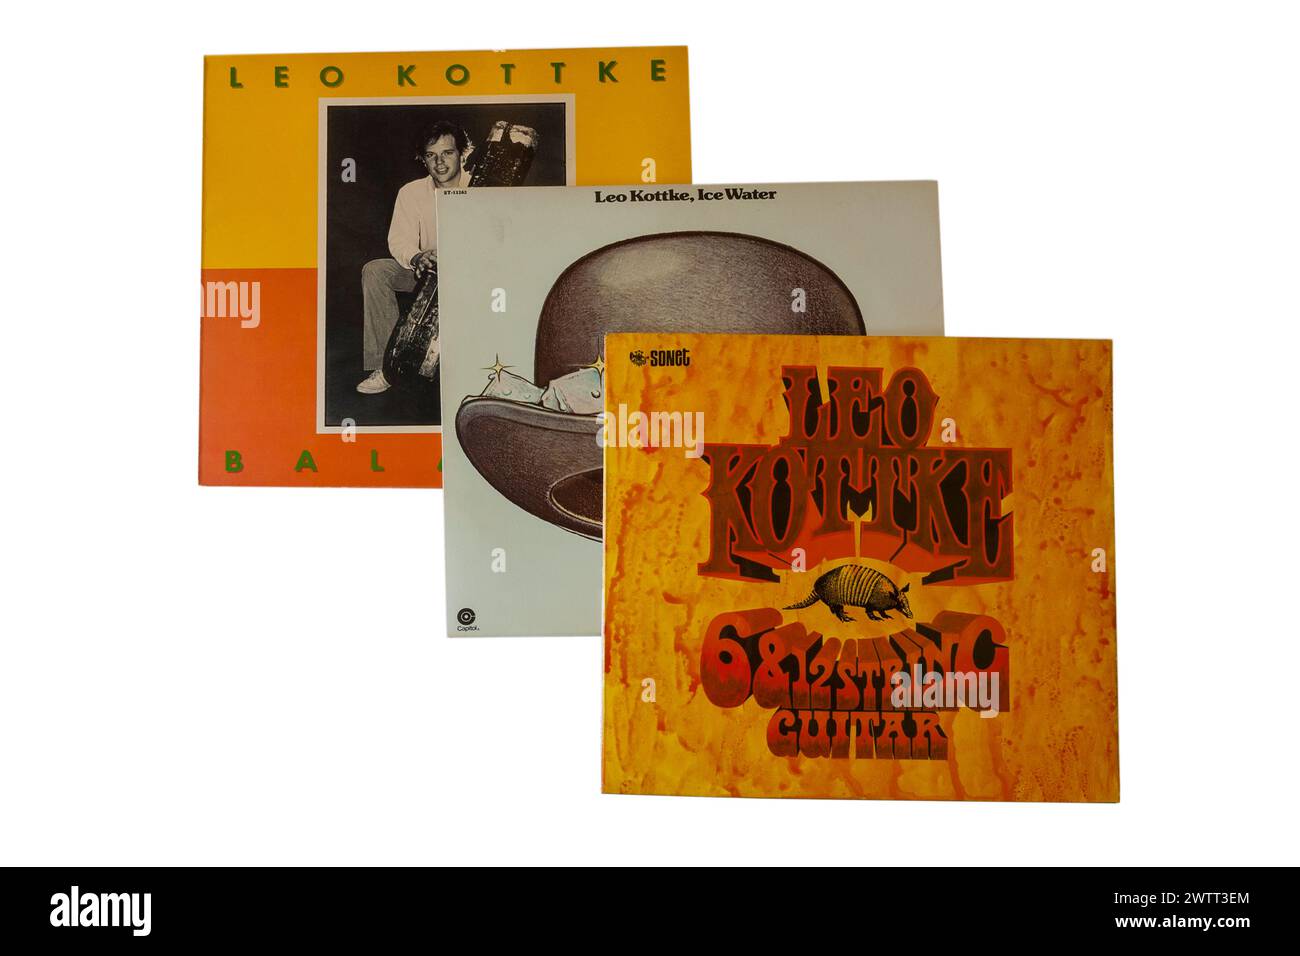 Leo Kottke 6 & 12 String Gitarre Vinyl Album Album Cover isoliert auf weißem Hintergrund Stockfoto